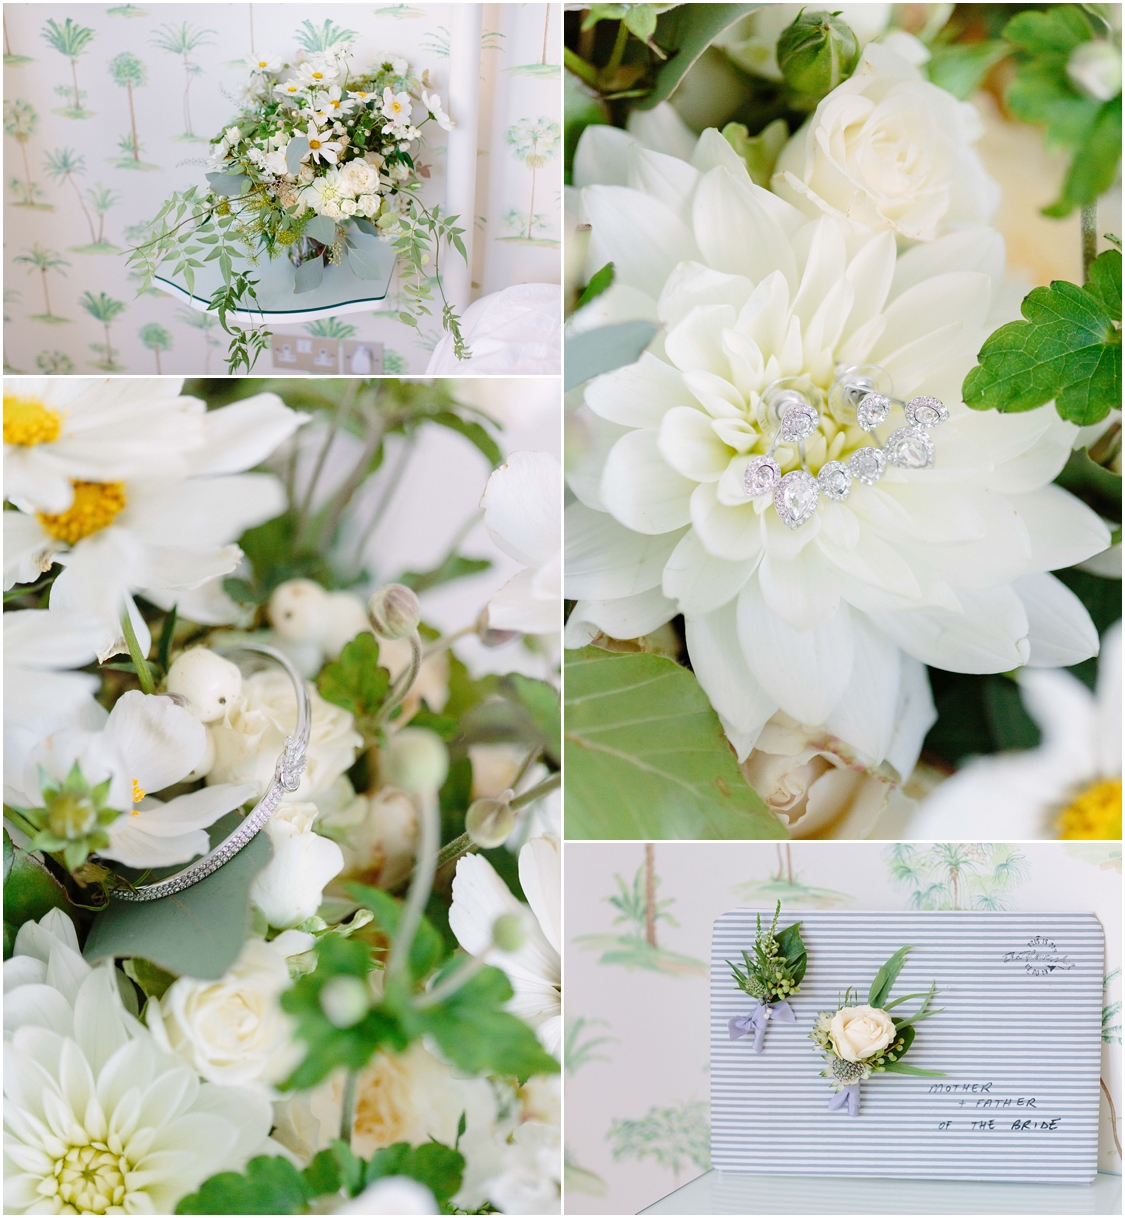 Wild-flower-wedding-bouquet-white-green-yellow